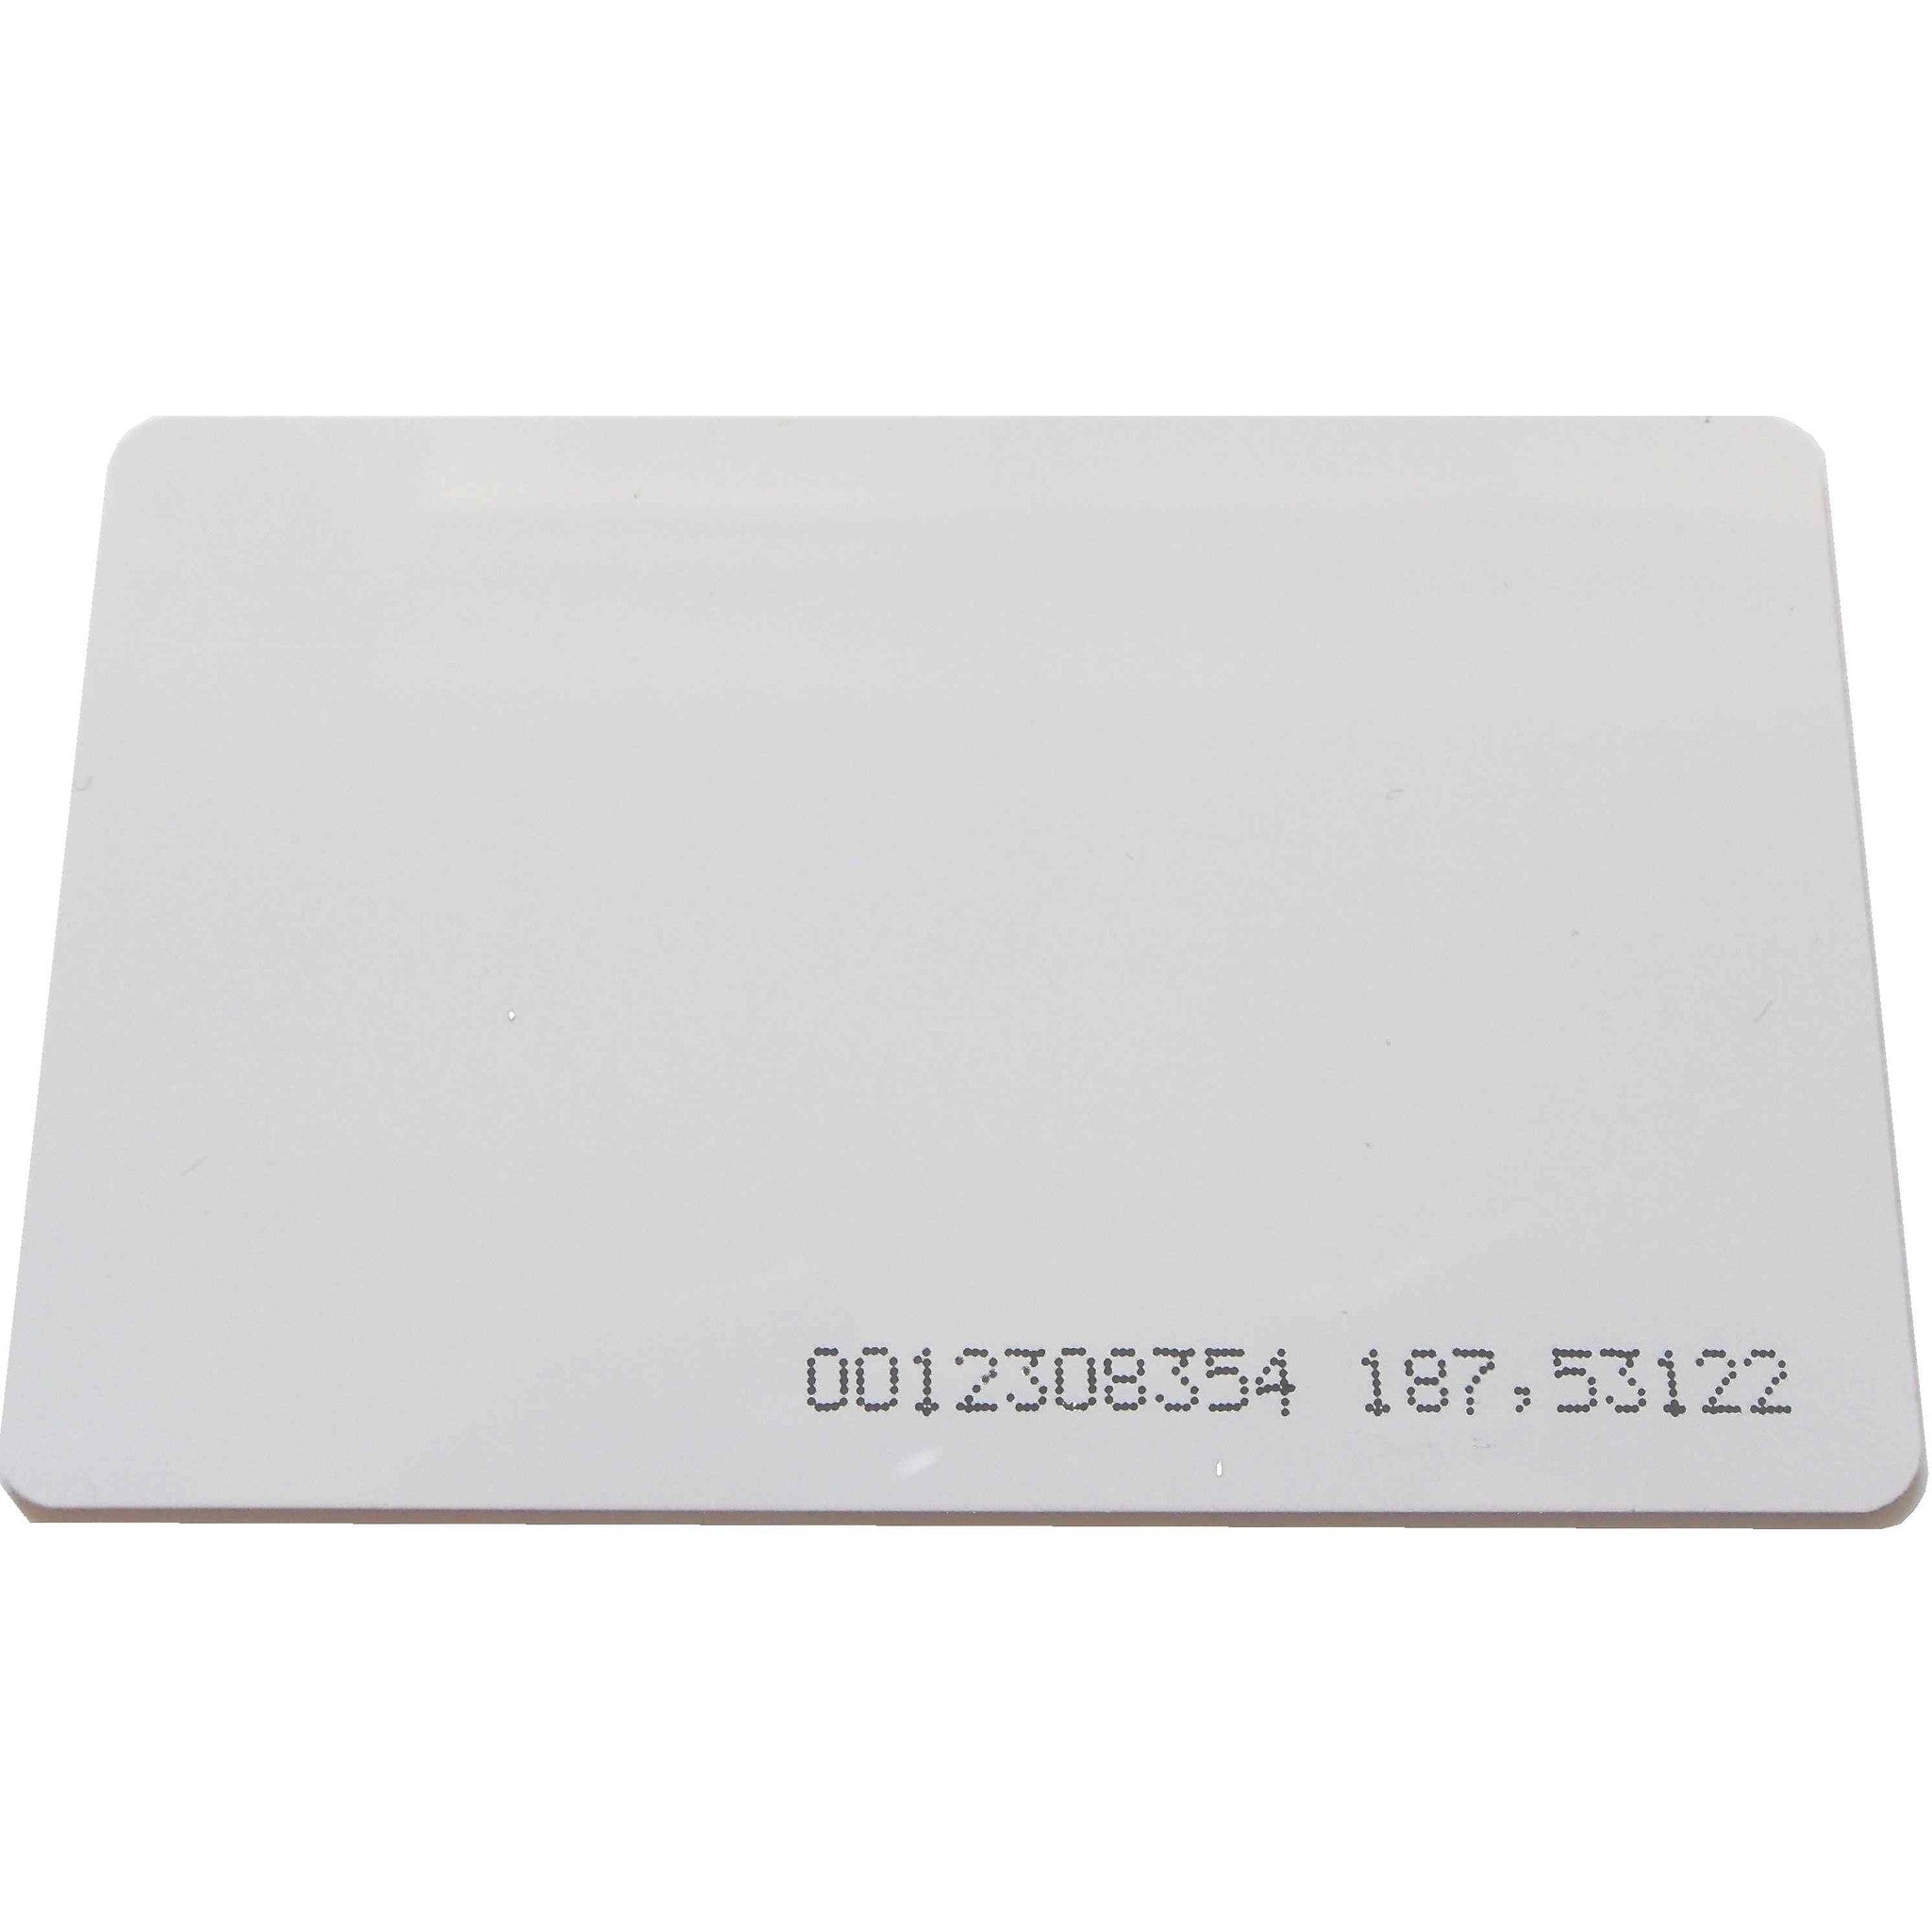 RFID Proximity Card Thin